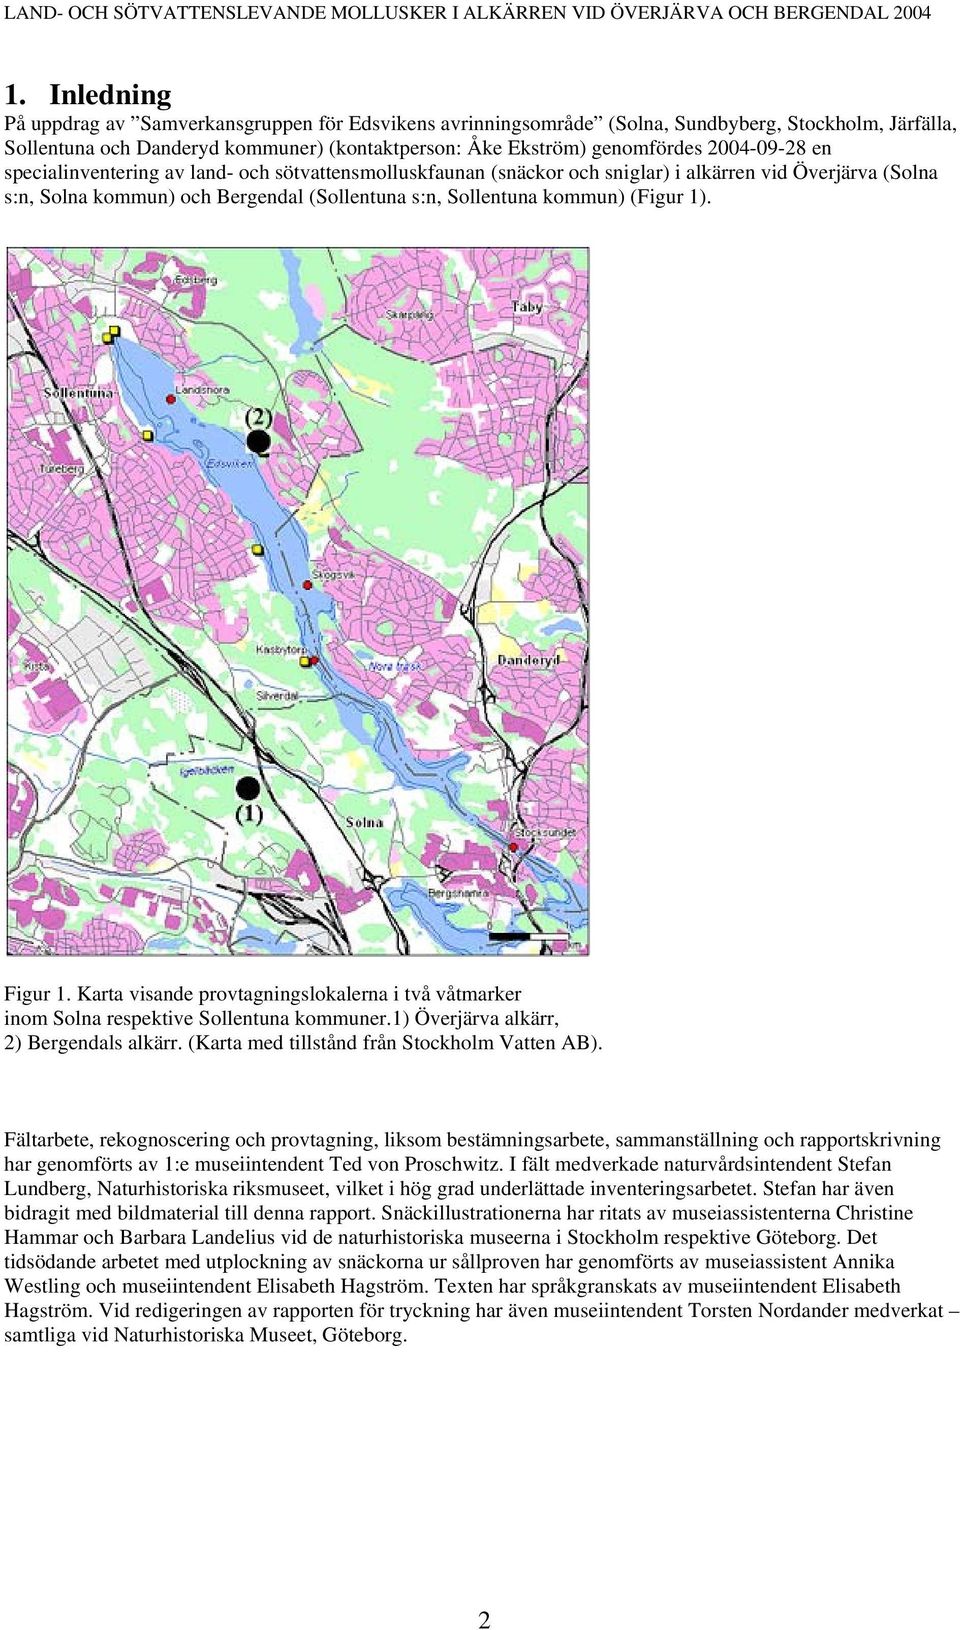 1). Figur 1. Karta visande provtagningslokalerna i två våtmarker inom Solna respektive Sollentuna kommuner.1) Överjärva alkärr, 2) Bergendals alkärr. (Karta med tillstånd från Stockholm Vatten AB).